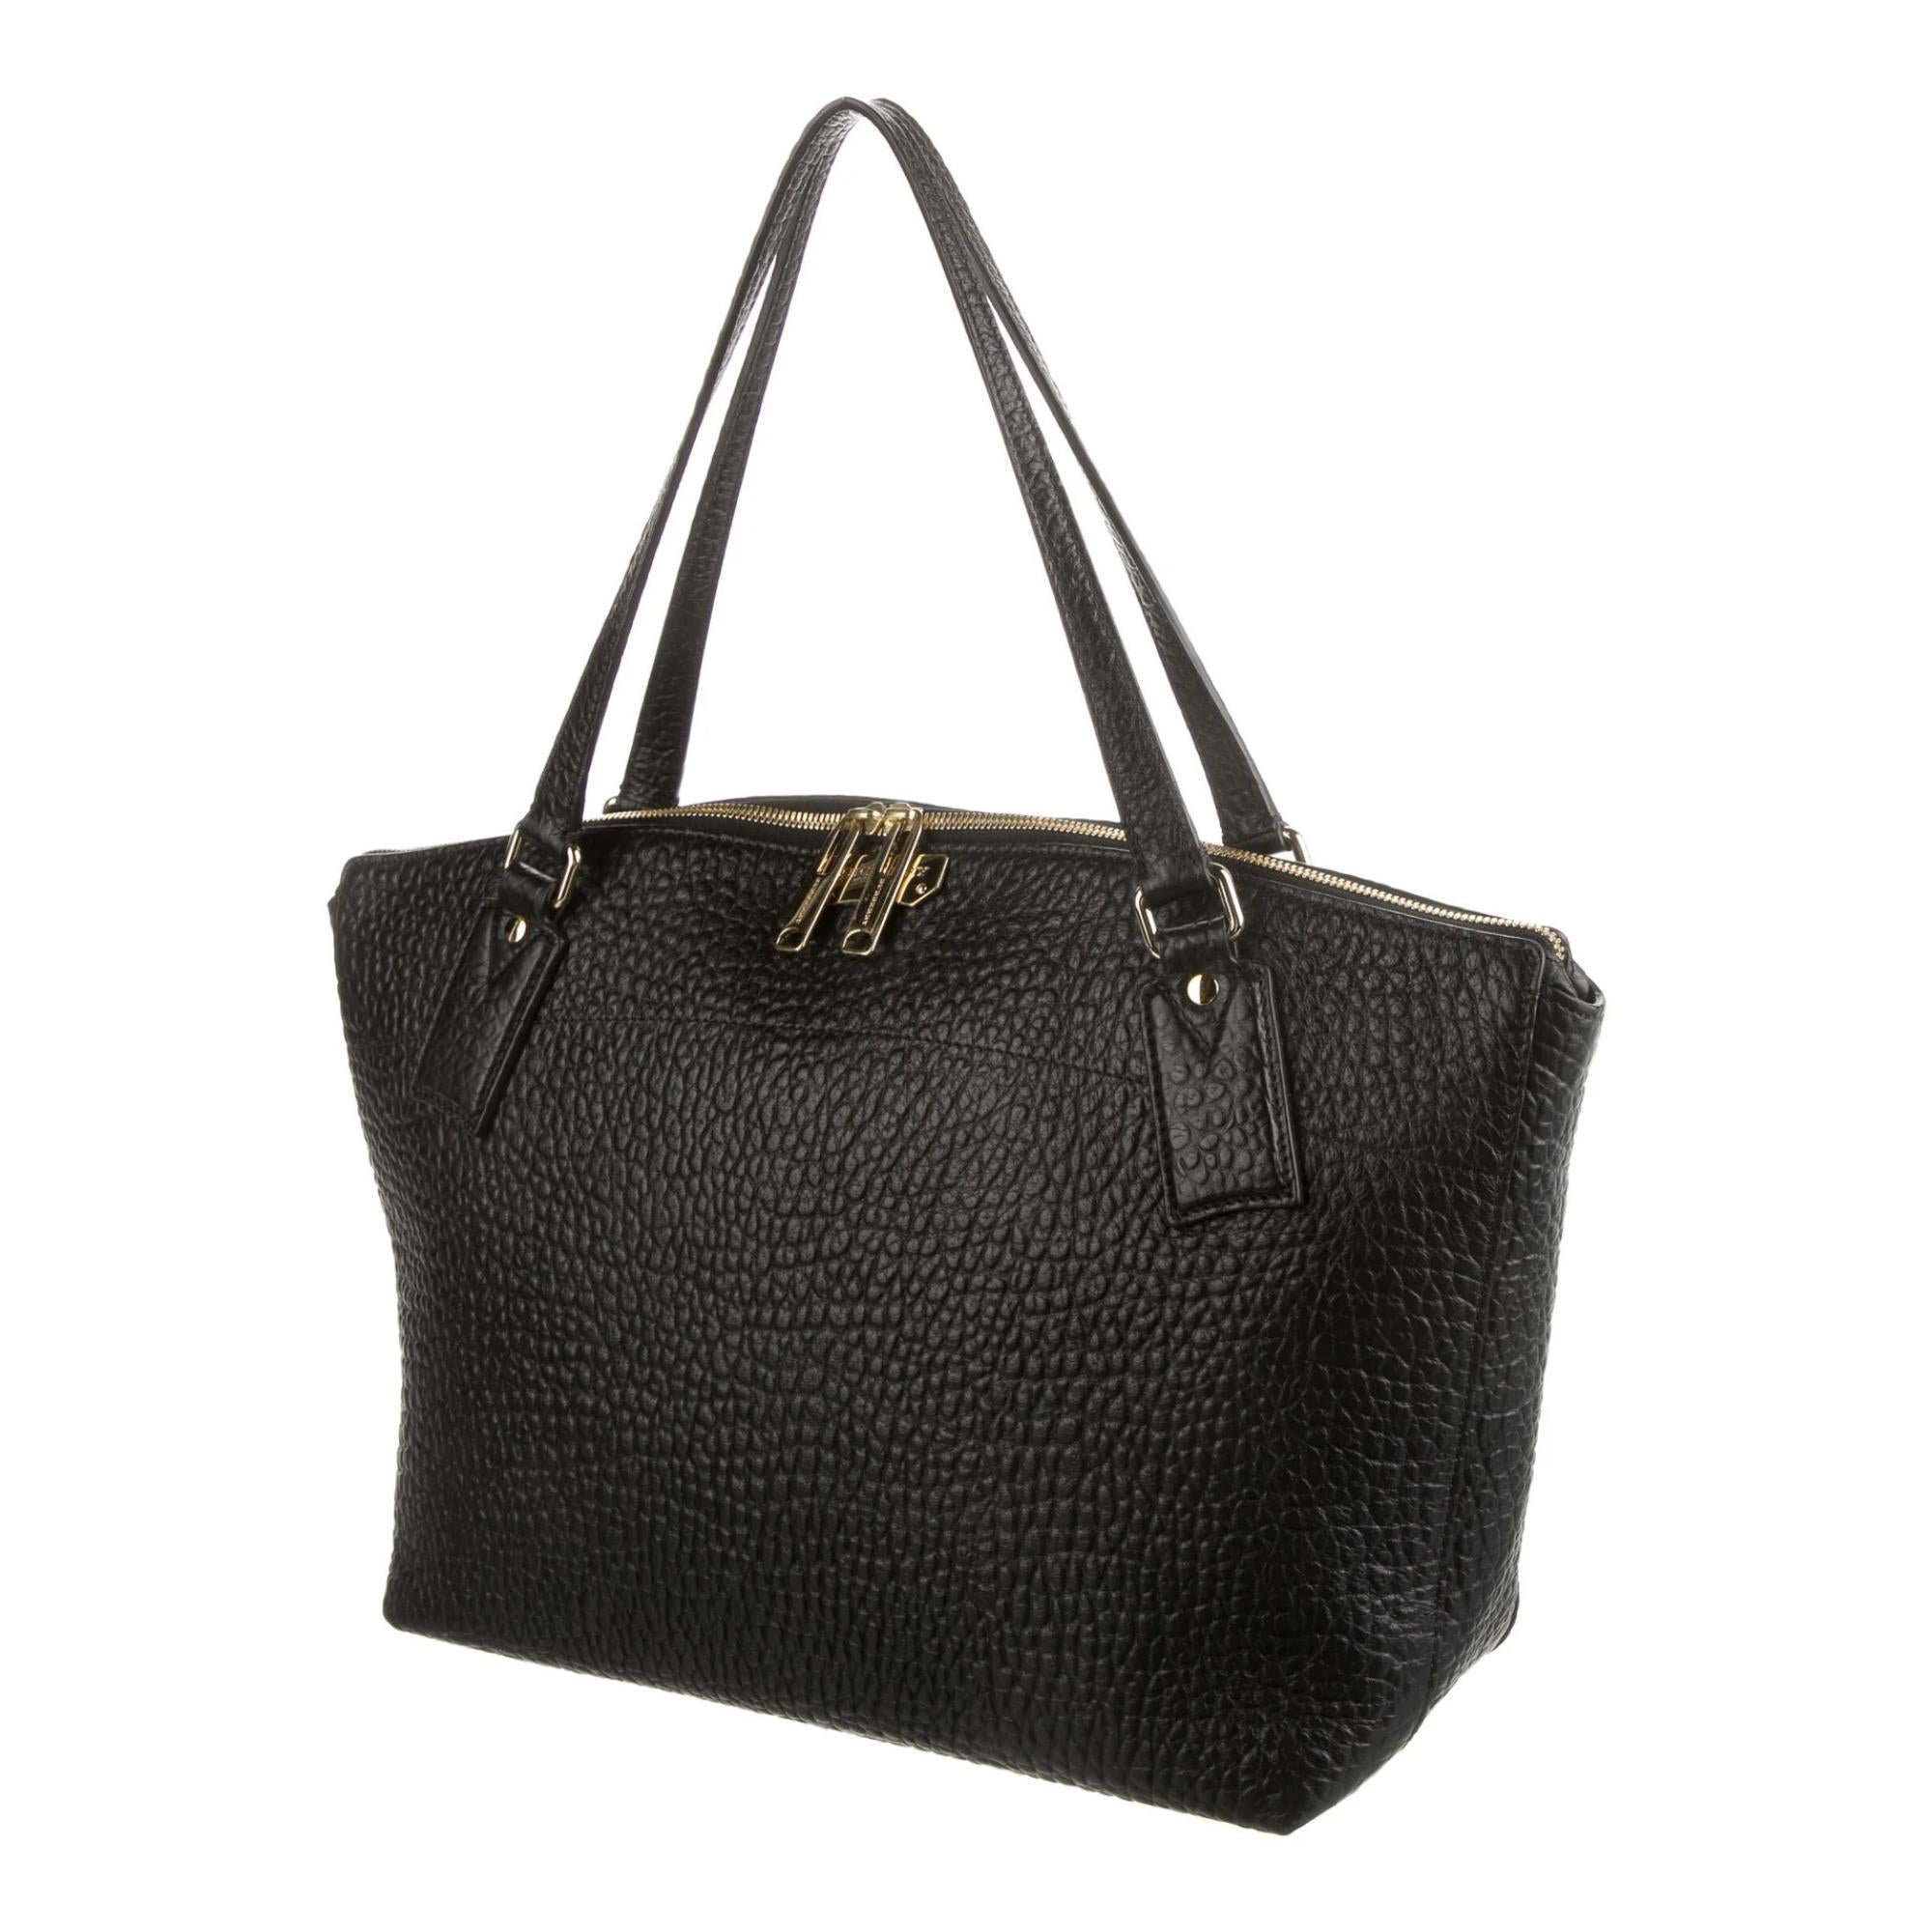 Burberry präsentiert diese Tasche aus stark strukturiertem schwarzem Leder. Die Tasche ist aus genarbtem Leder gefertigt, hat goldfarbene Beschläge, zwei flache Ledergriffe, einen Reißverschluss an der Oberseite und Schutzfüße am Boden. Die Tasche